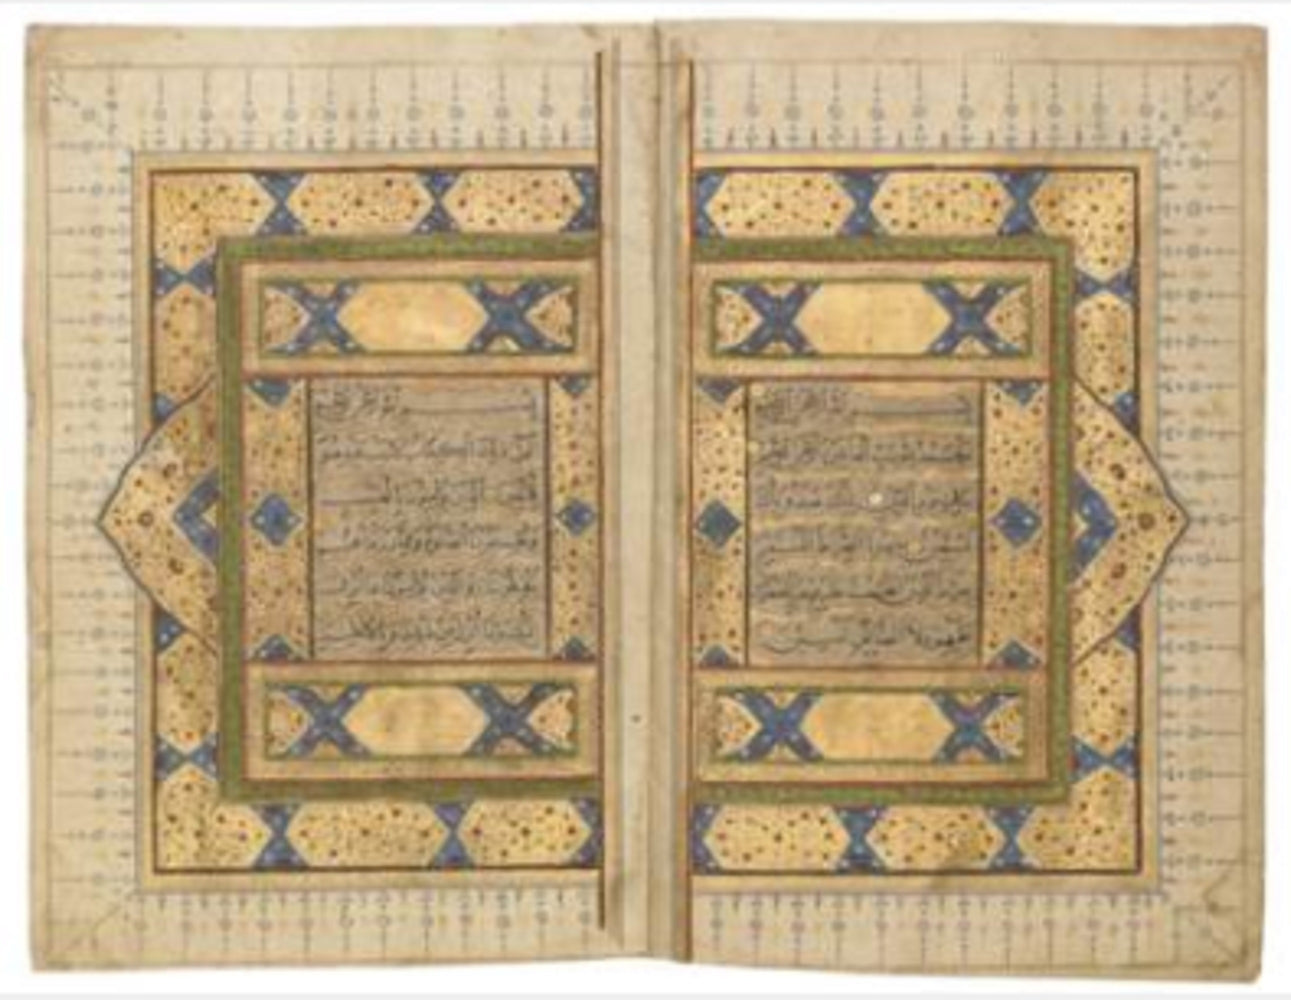  North Indian Quran